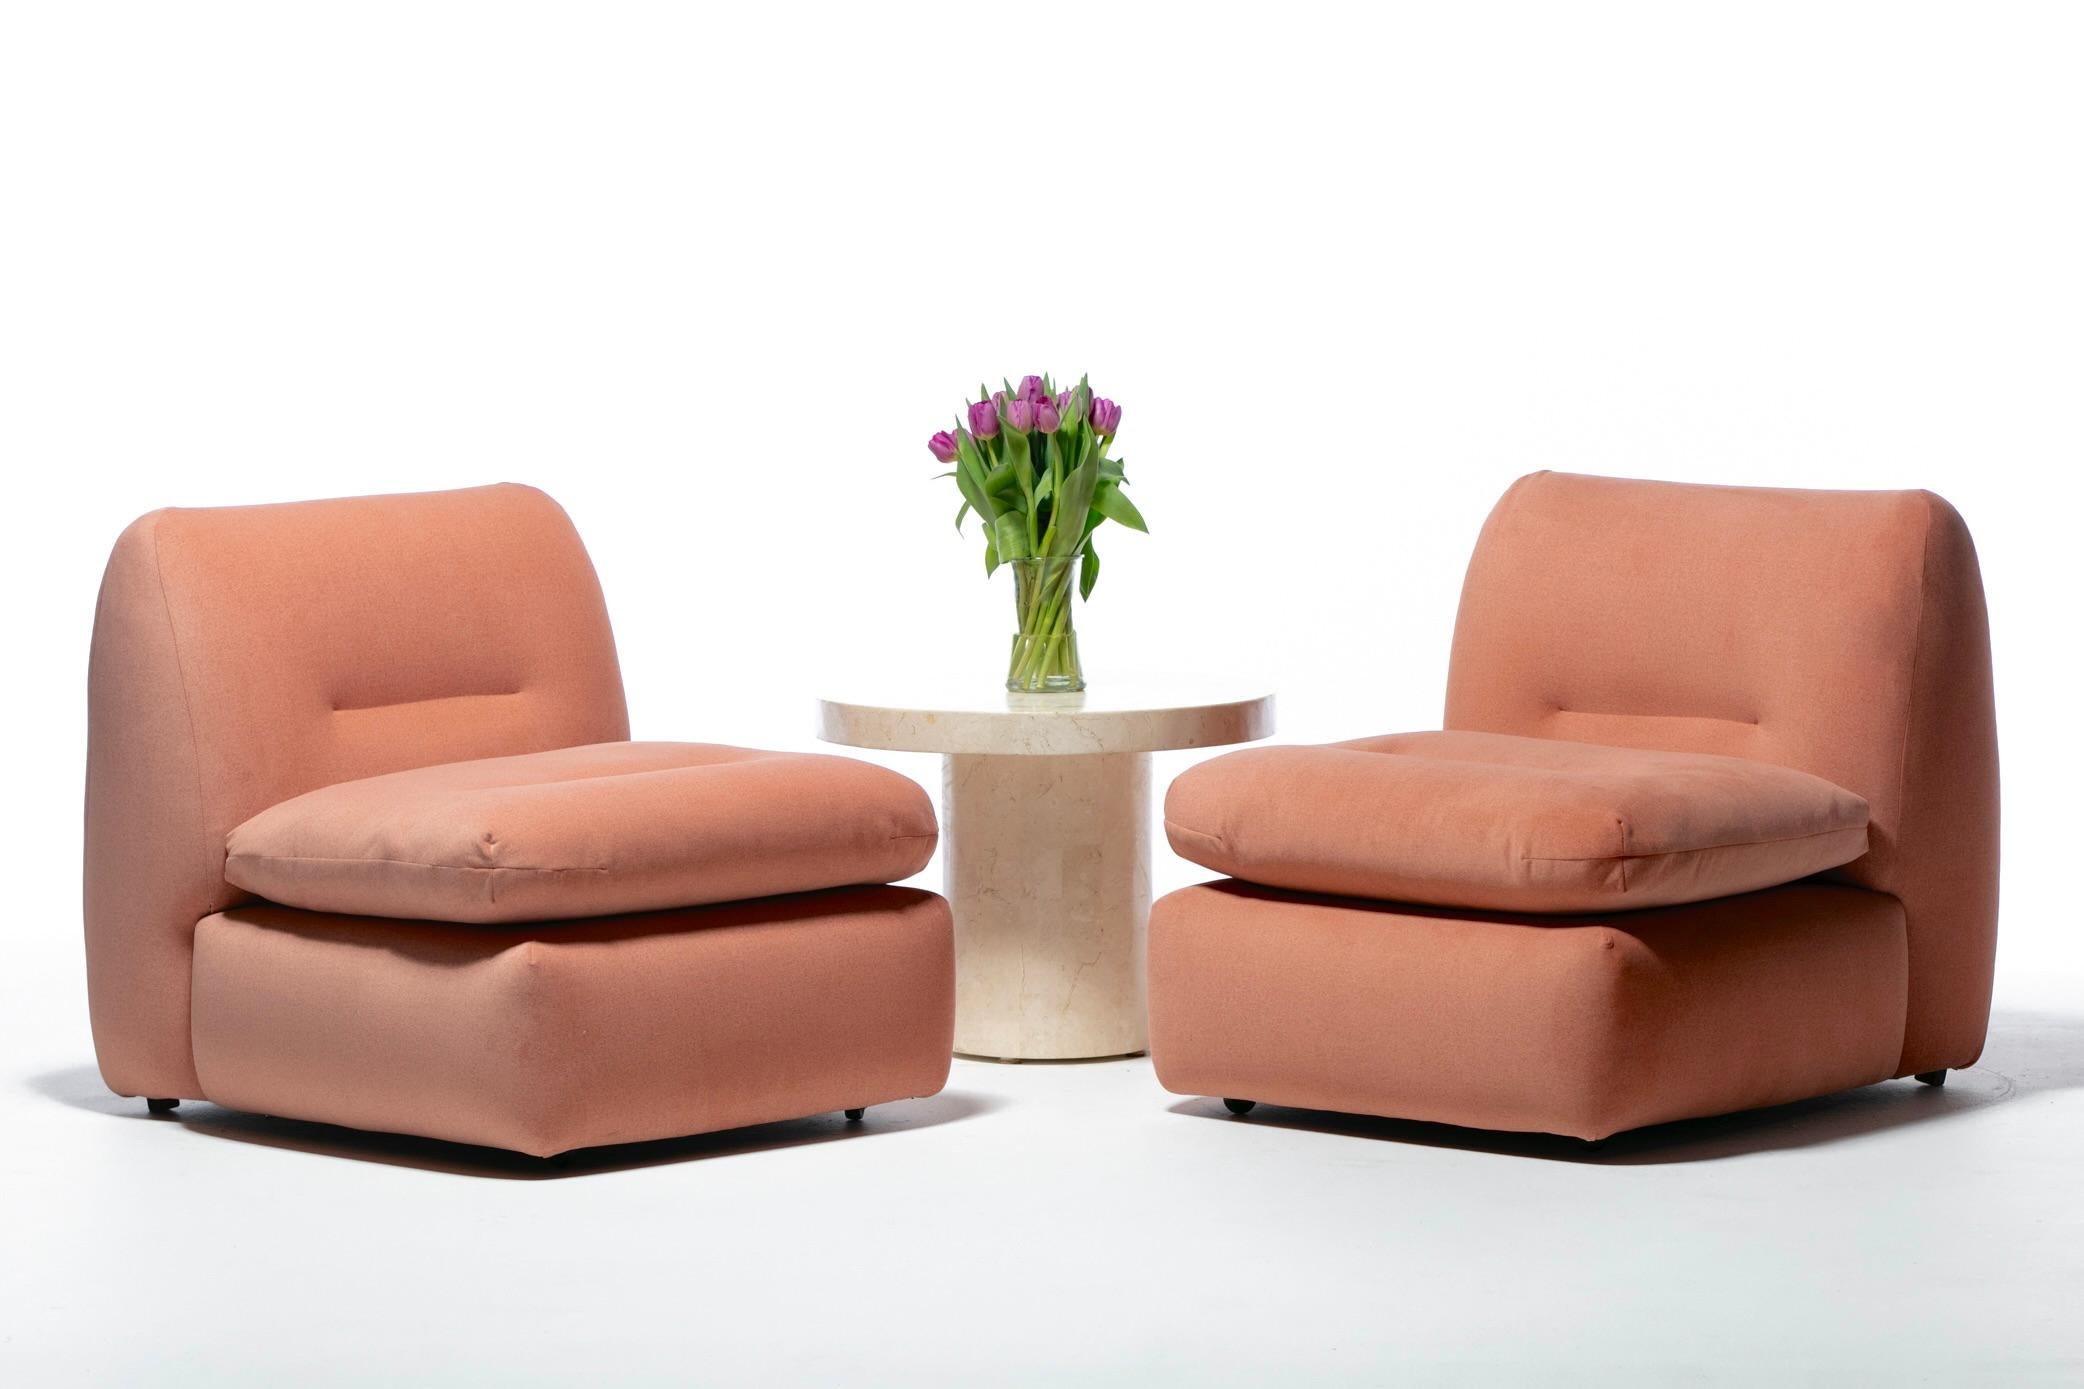 Sexy Italian Slipper Chairs entièrement restaurées avec de nouveaux coussins et une sellerie Blush Pink. Moderne. Luxueux. Une forme unique avec des lignes simples et un profil épuré. Le tissu Blush Pink apporte de la chaleur grâce à sa couleur